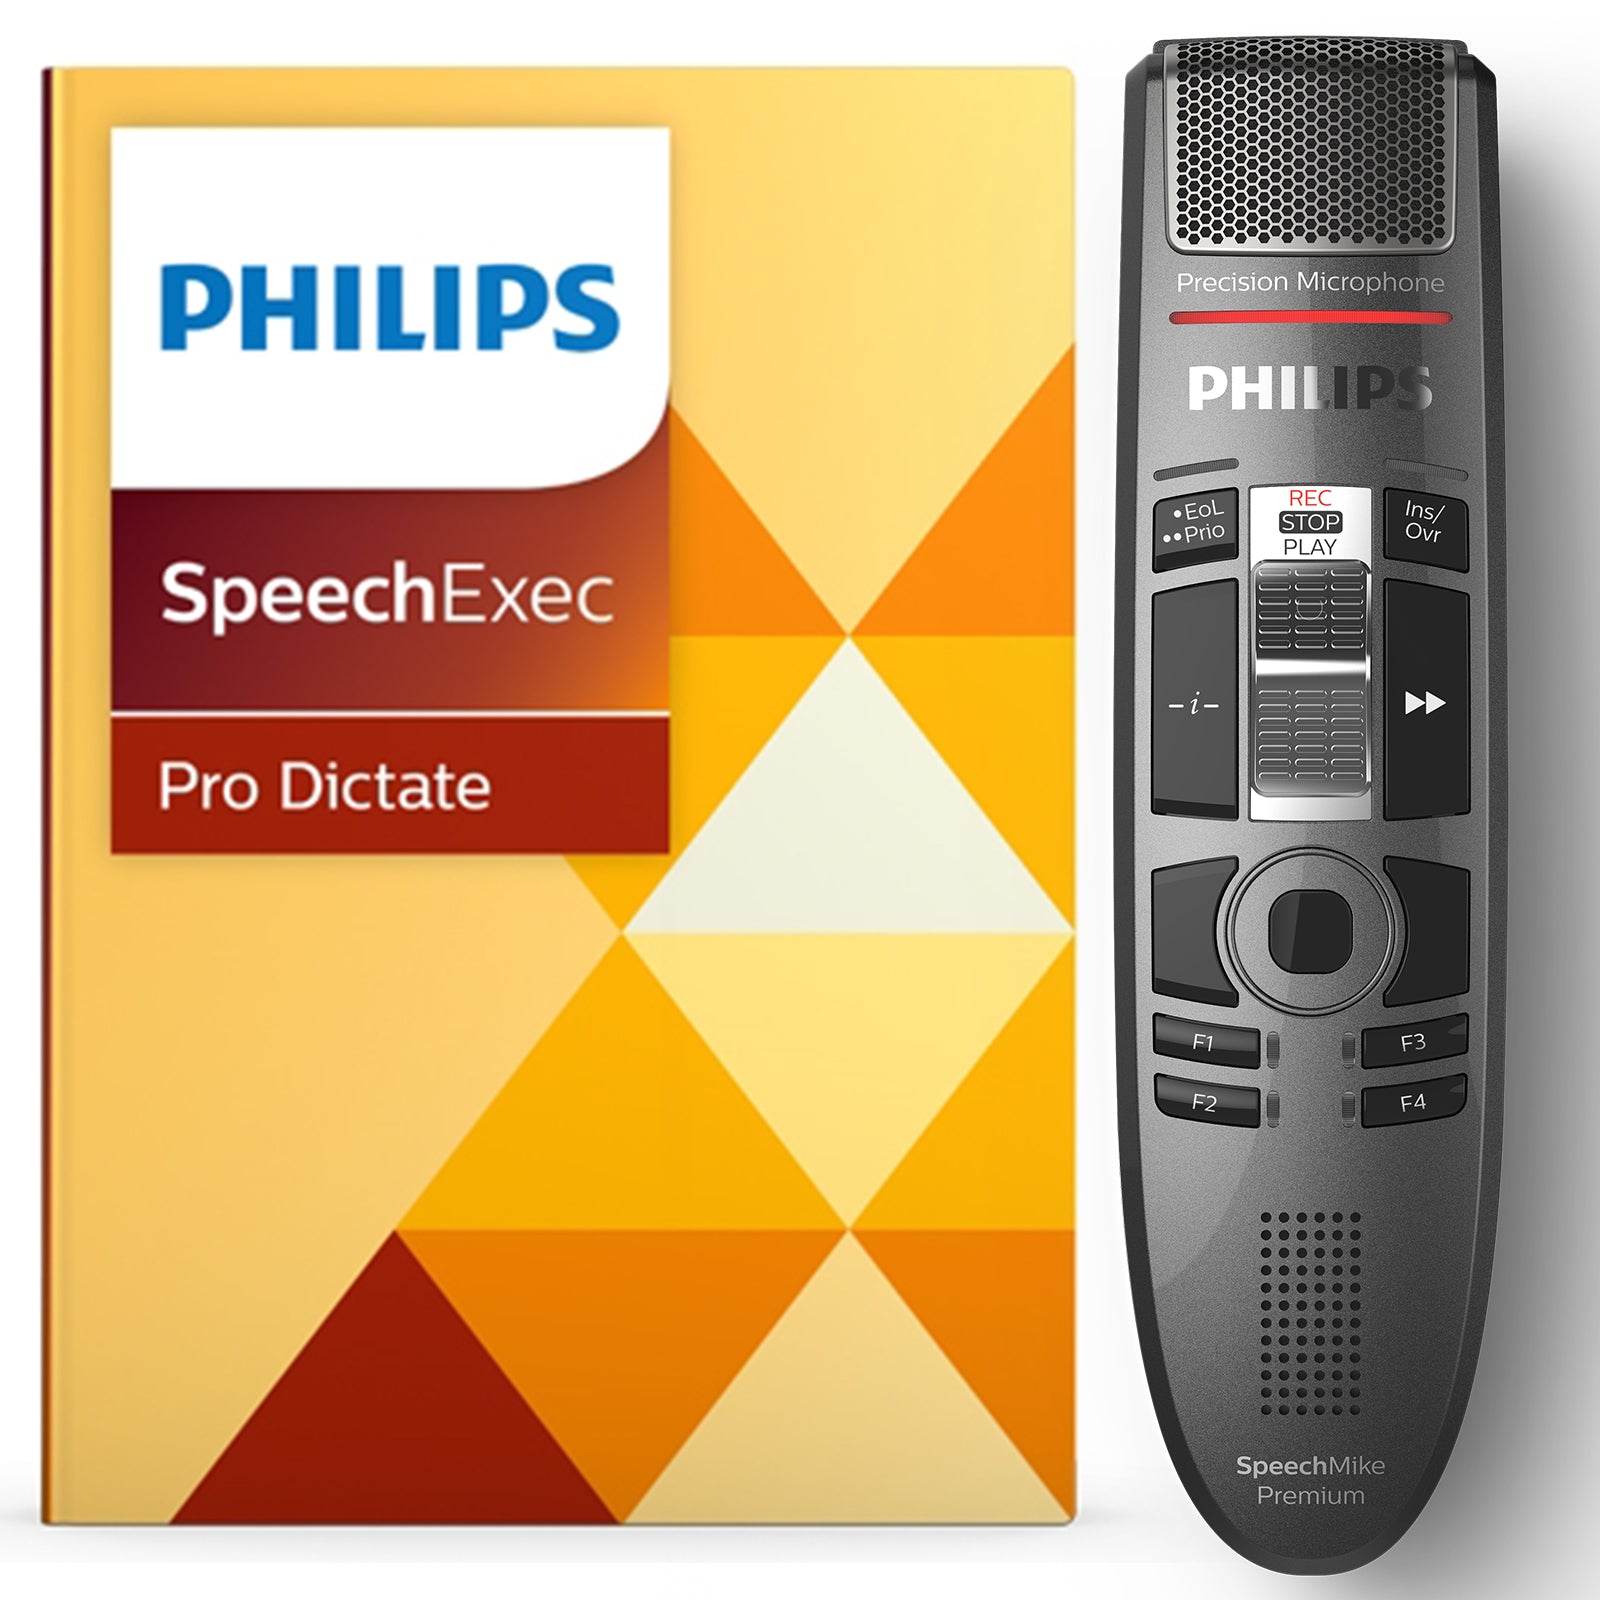 philips speechmike pro software